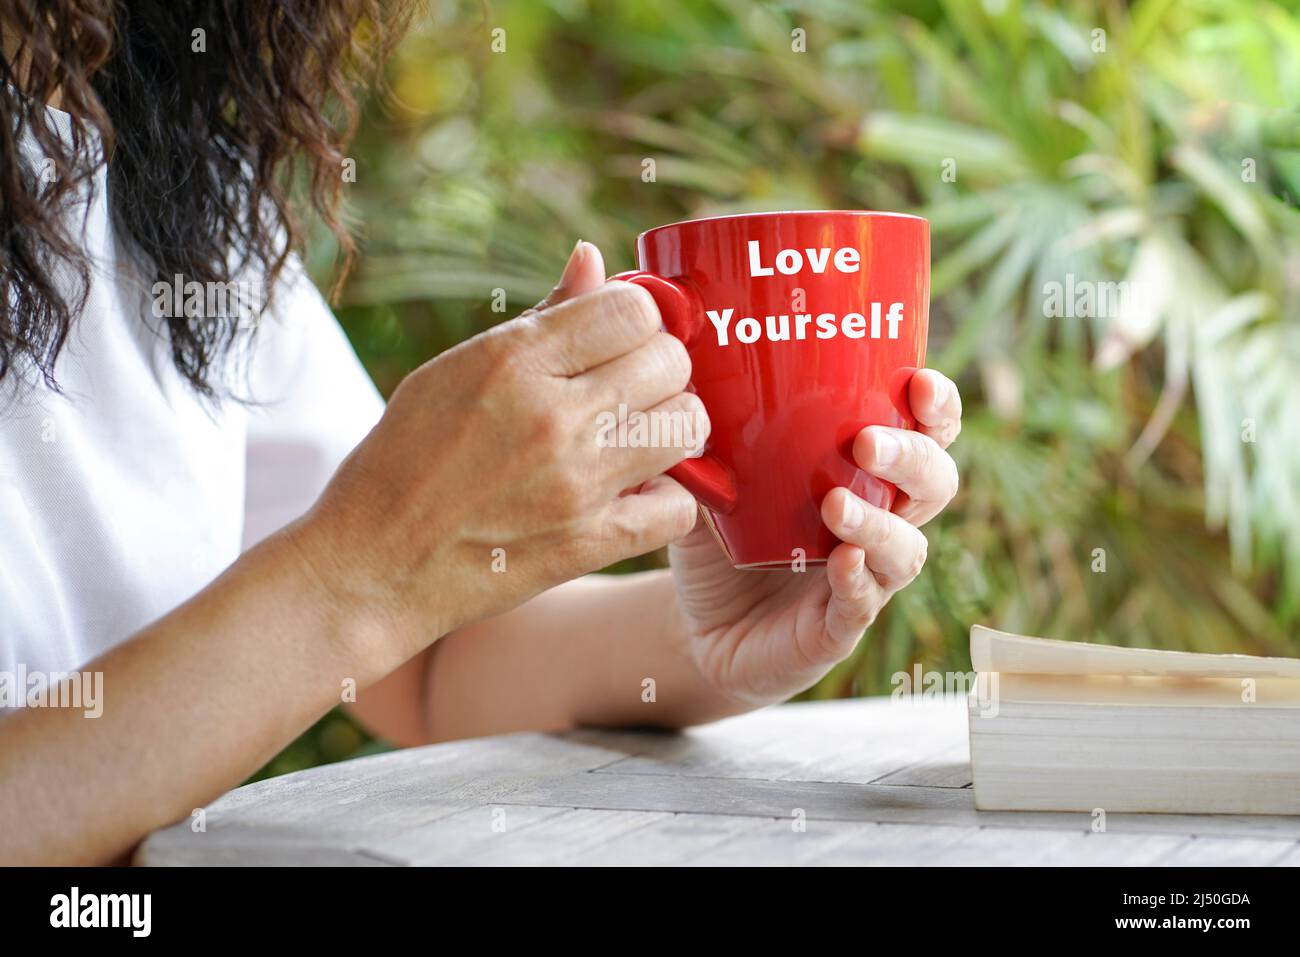 Donna che tiene una tazza rossa con il testo Love Yourself, e un libro sul tavolo. Esterno con sfondo di palme. Foto Stock